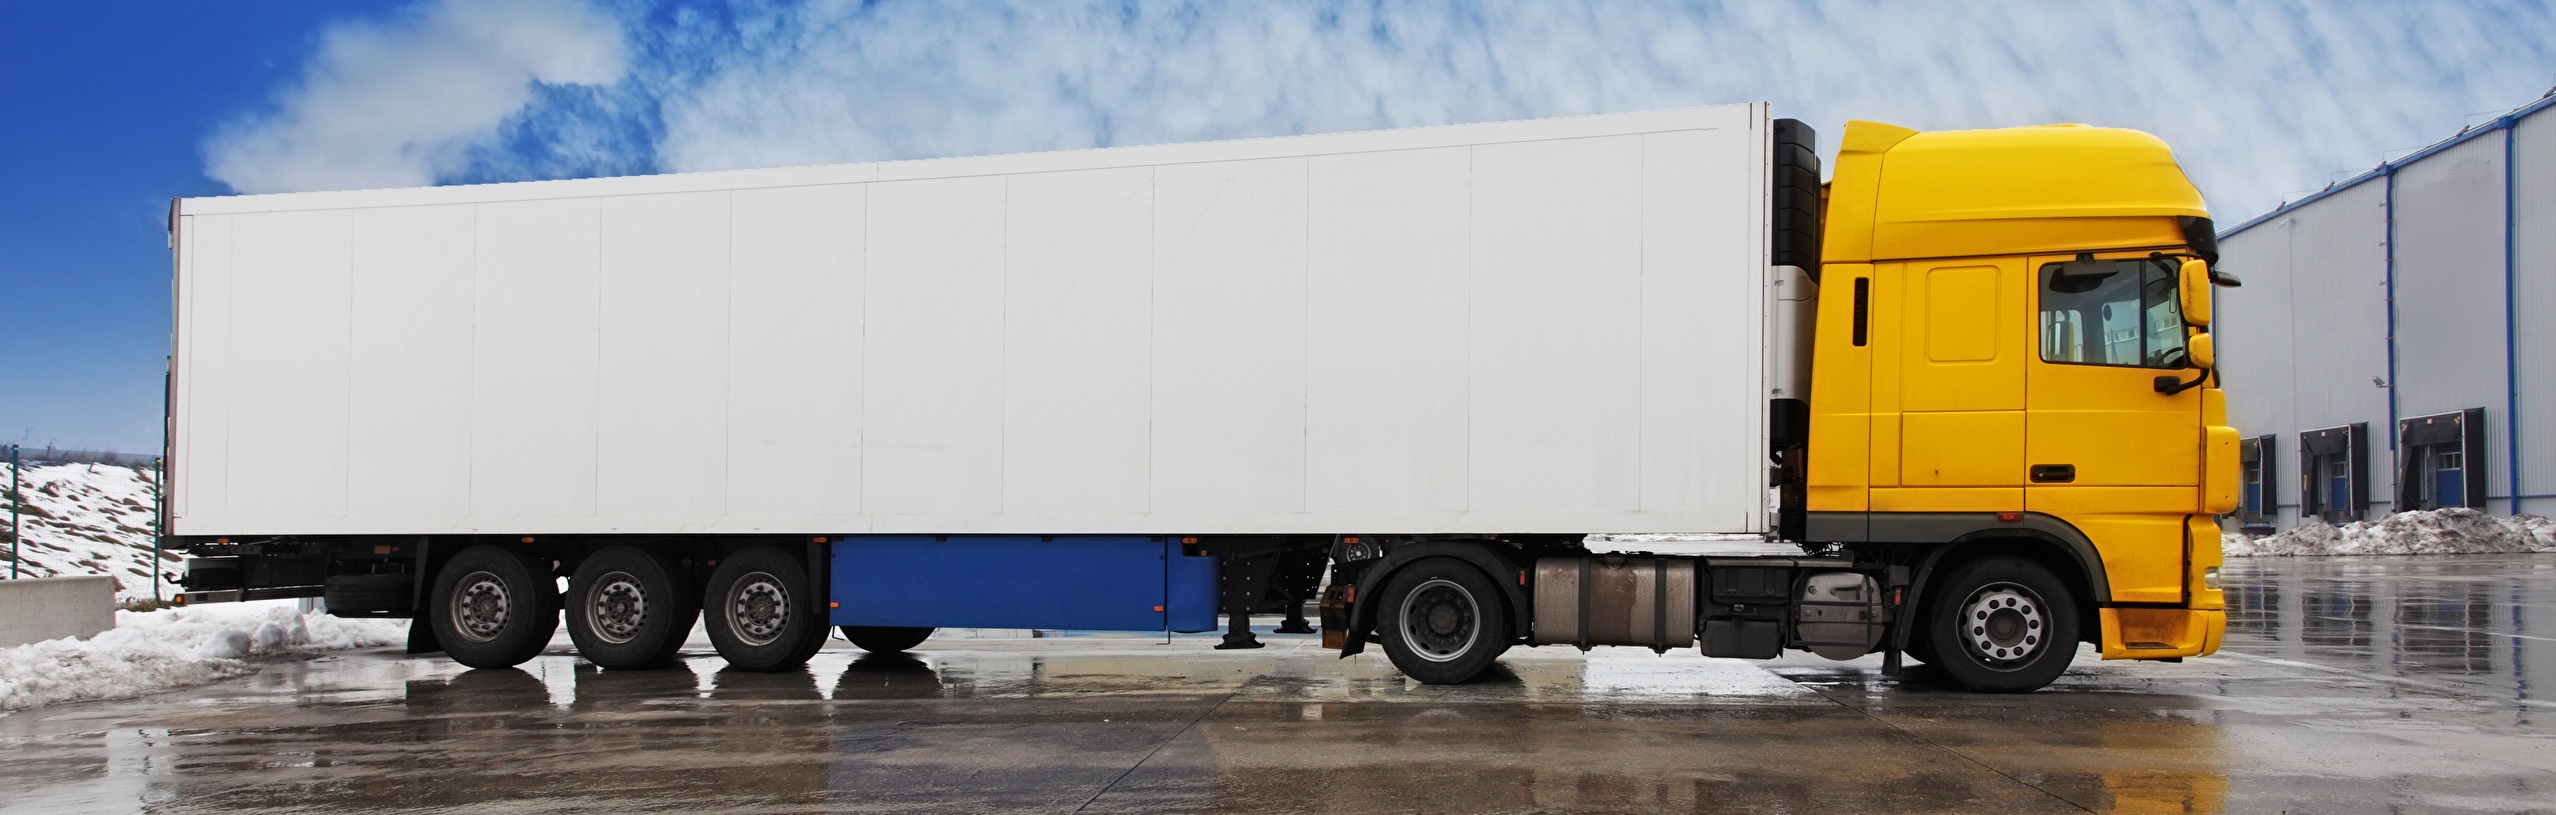 Разновидности грузовых платформ грузовиков, грузоподъемностью 20 тонн